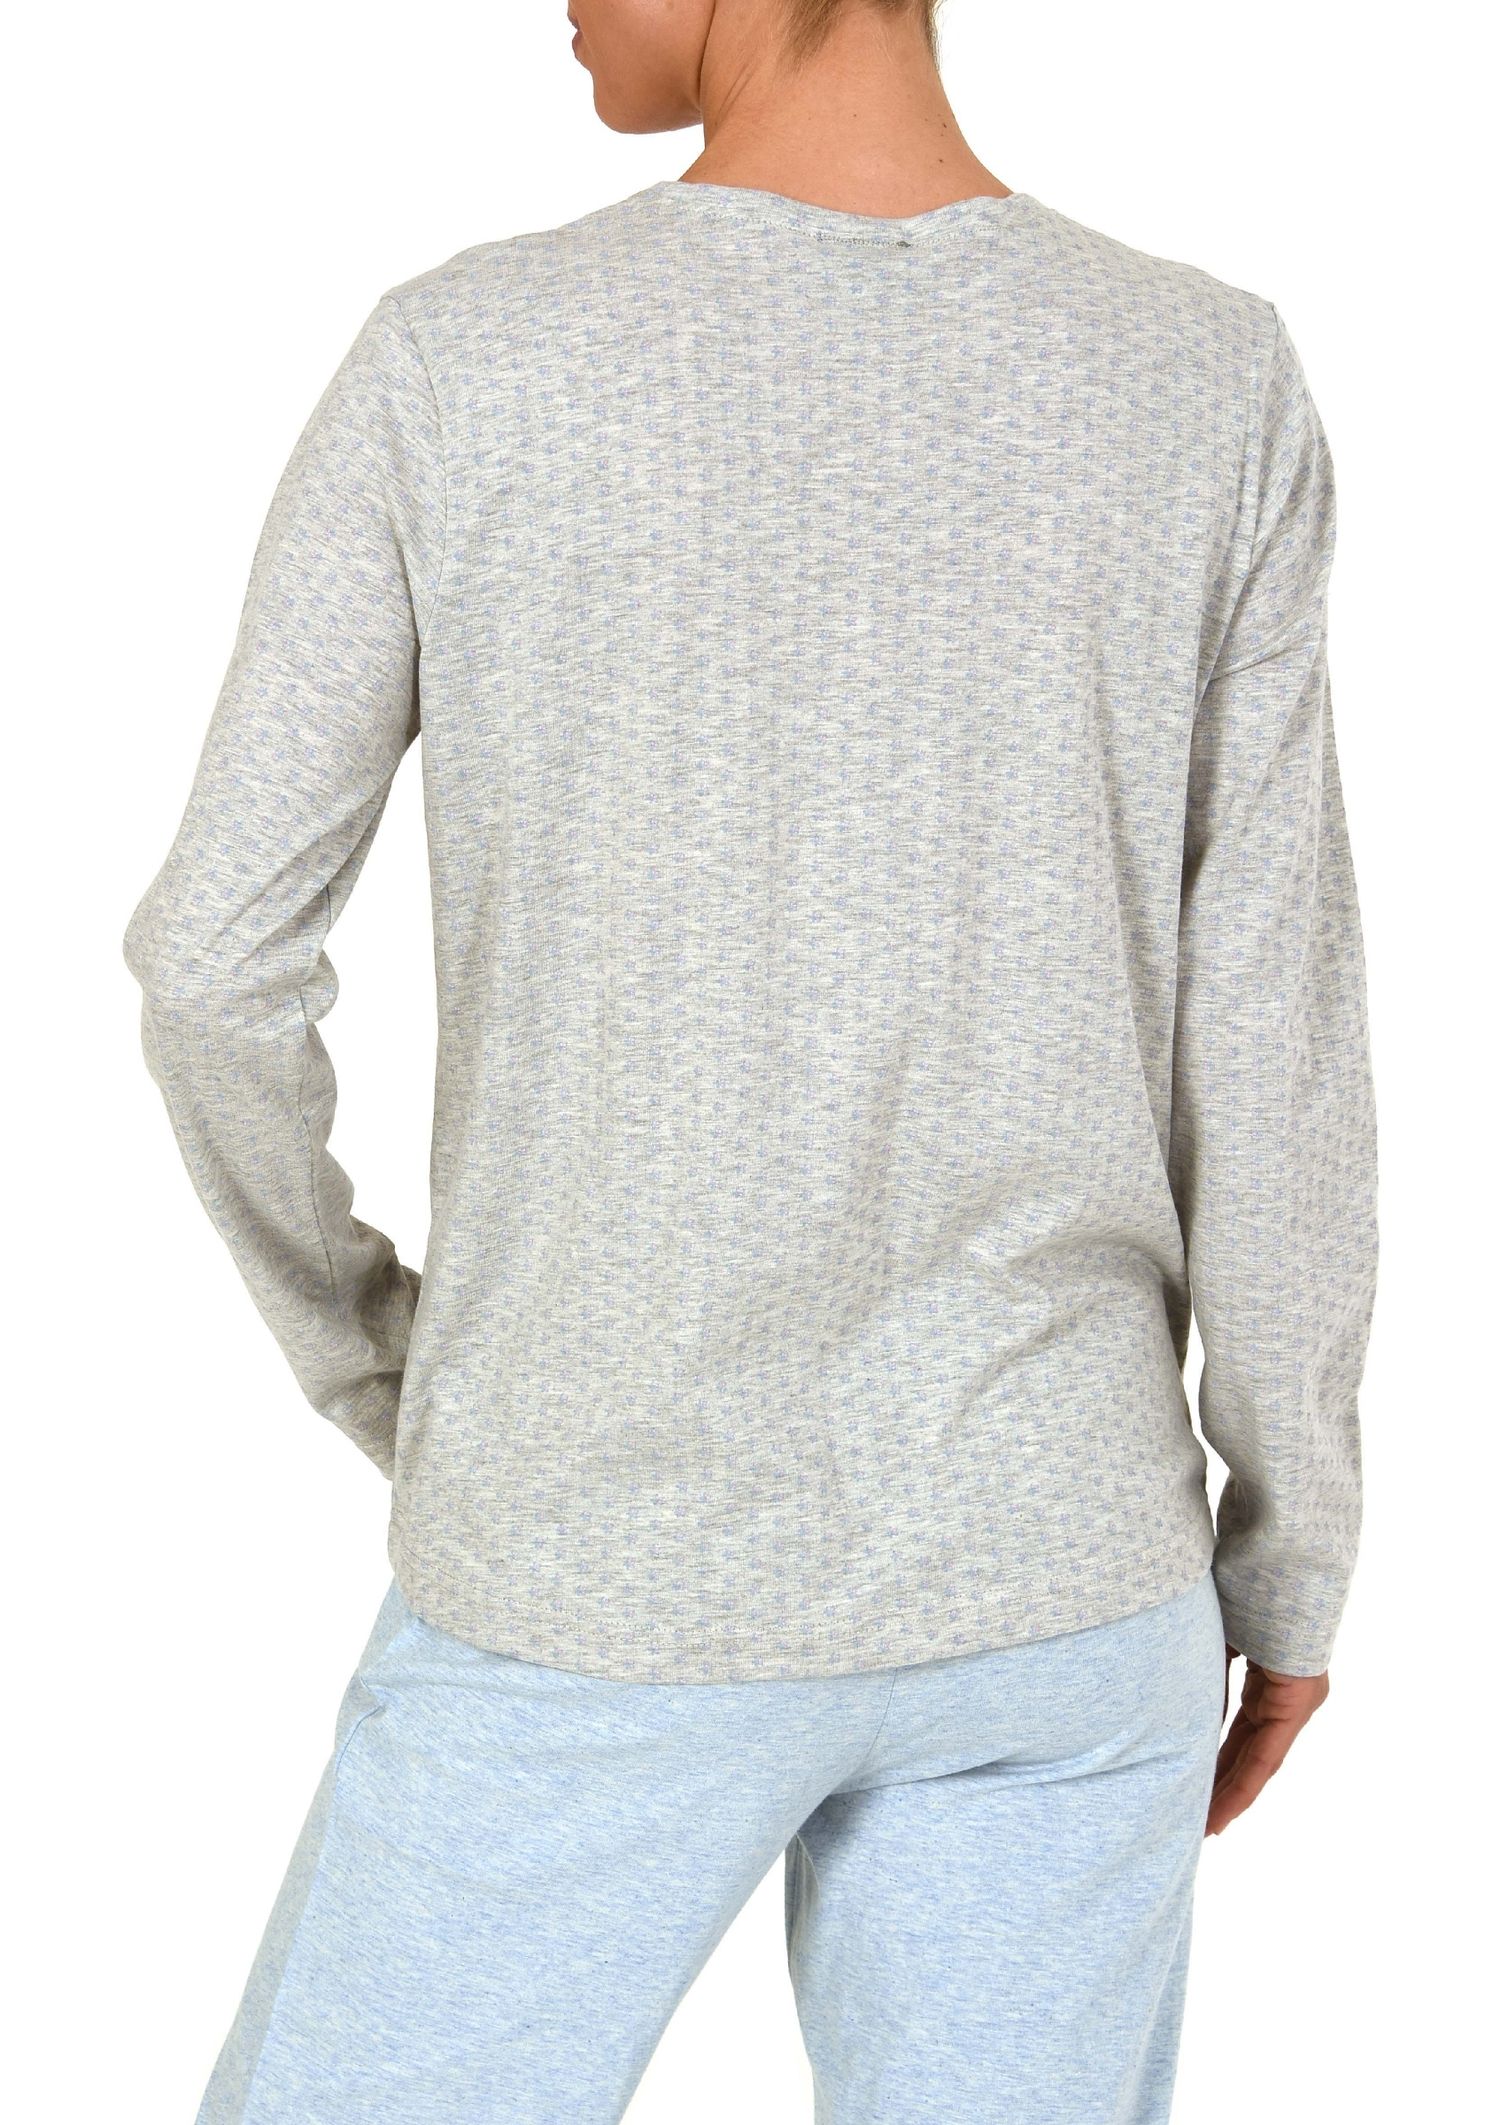 Damen Shirt Top langarm, Minimal-Print, Mix & Match -191 219 90 904